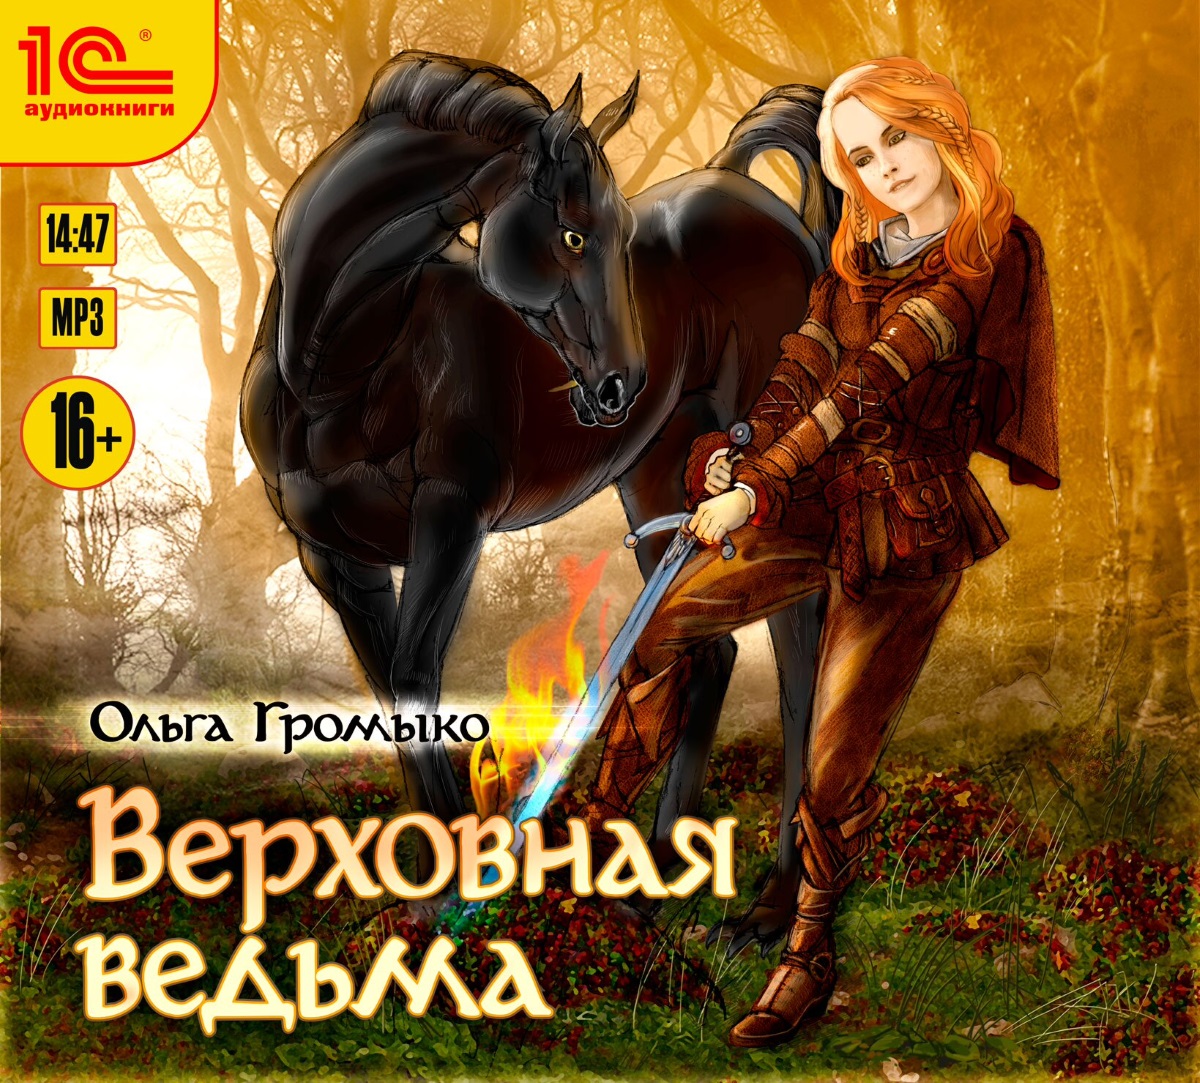 Ольга Громыко ведьма хранительница